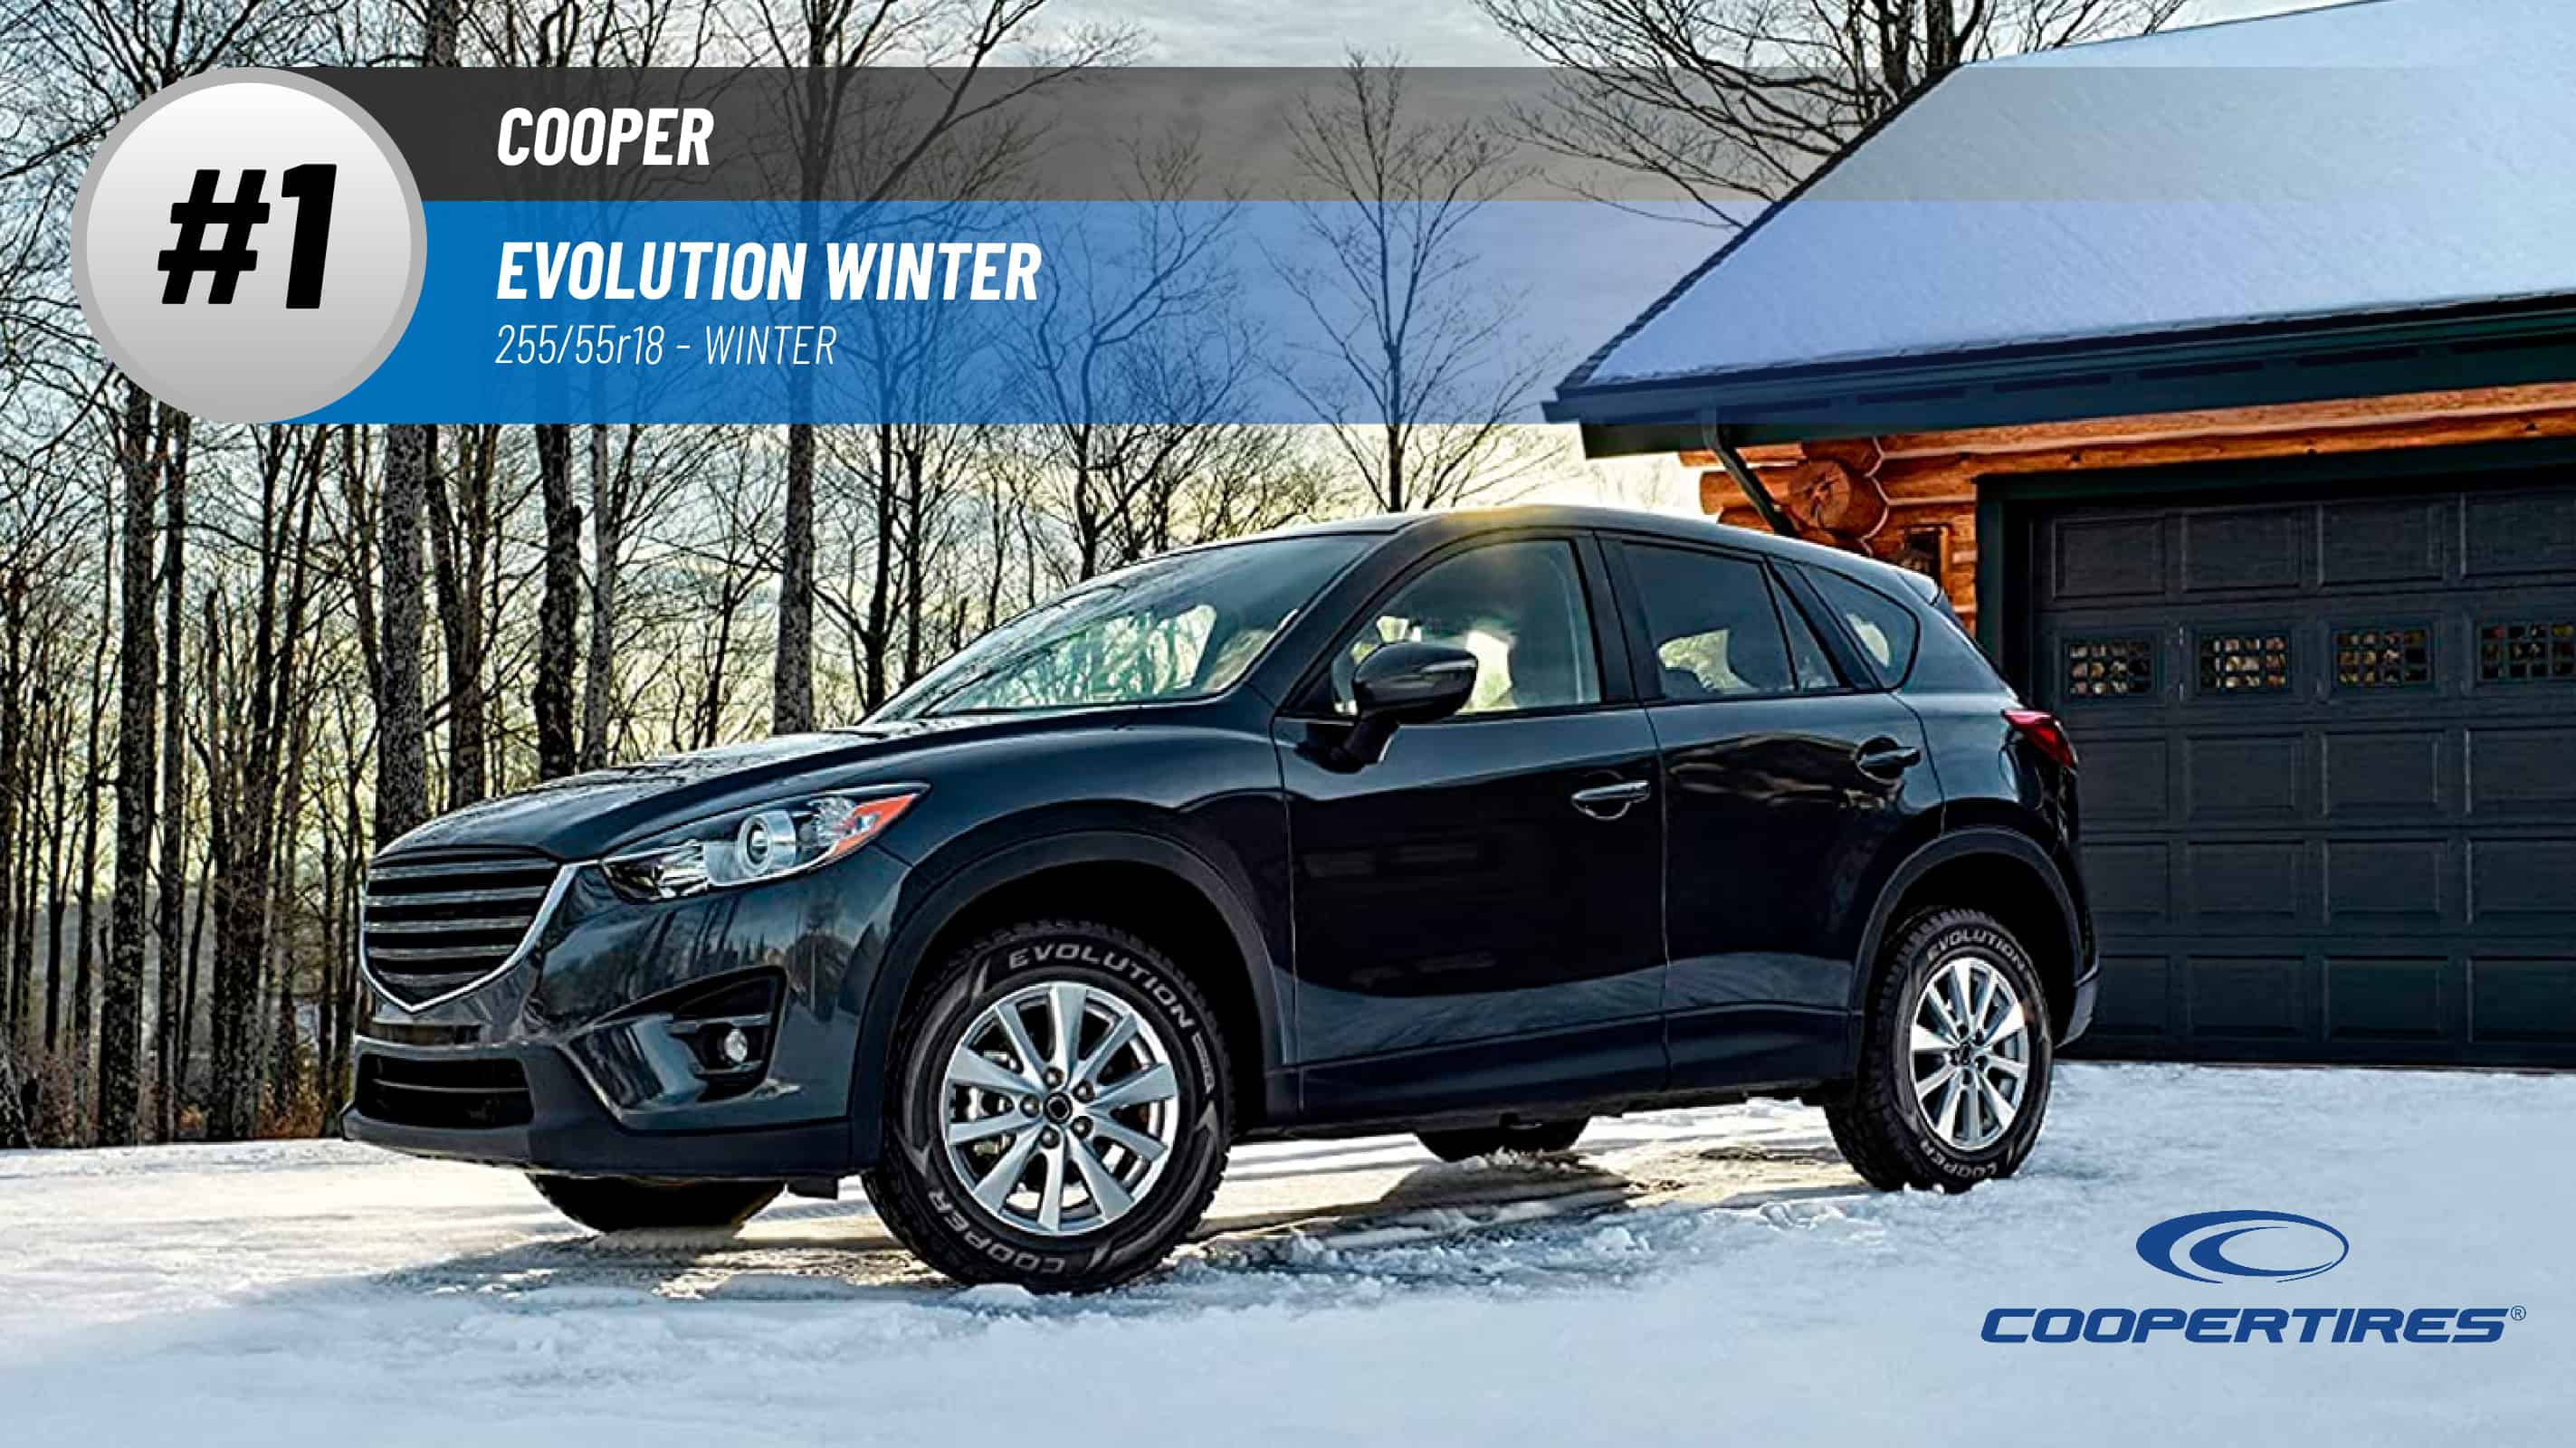 Top #1 Winter Tires: Cooper Evolution Winter – 255/55r18